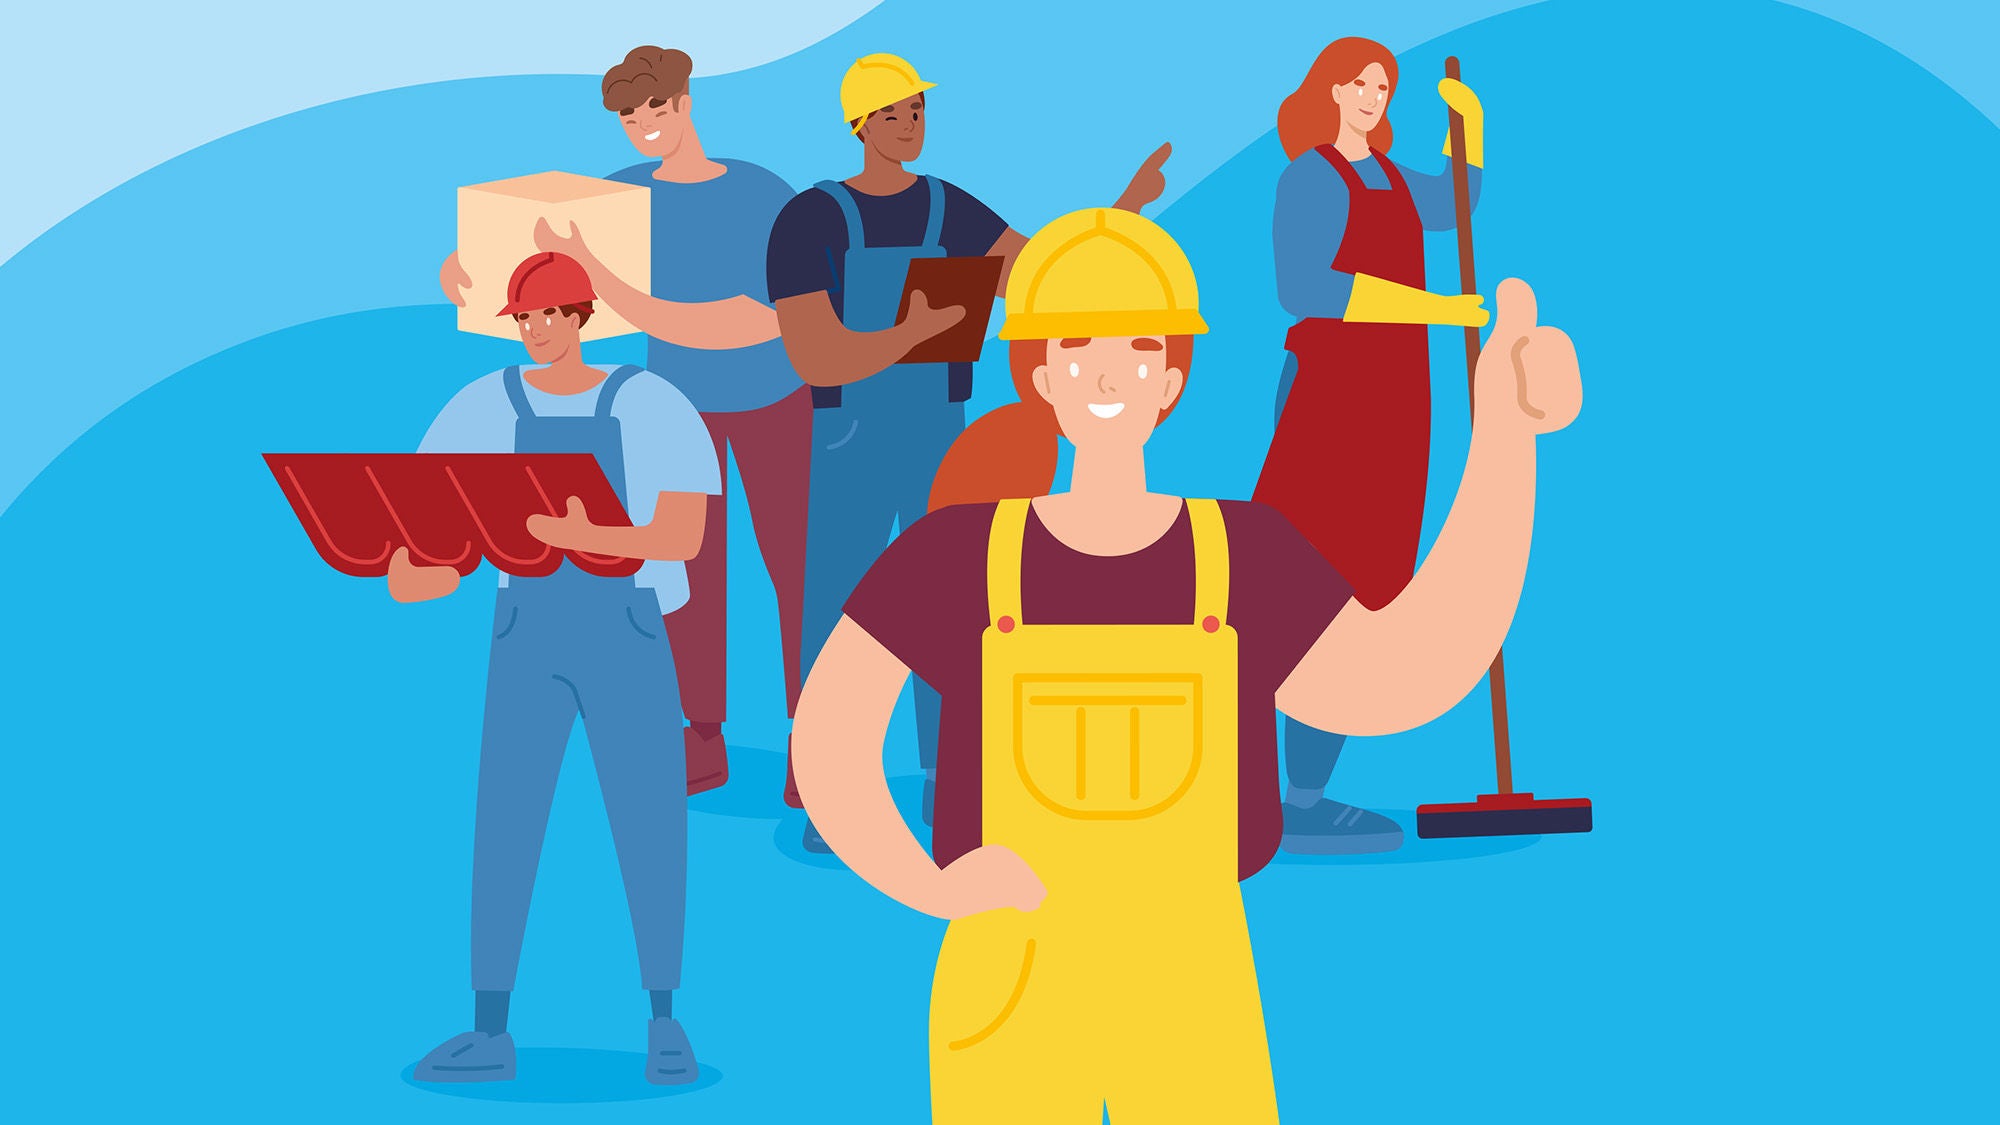 Illustration von verschiedenen arbeitenden Personen: Reinigungsfrau, Arbeiter mit Helm, Botendienst uvm.